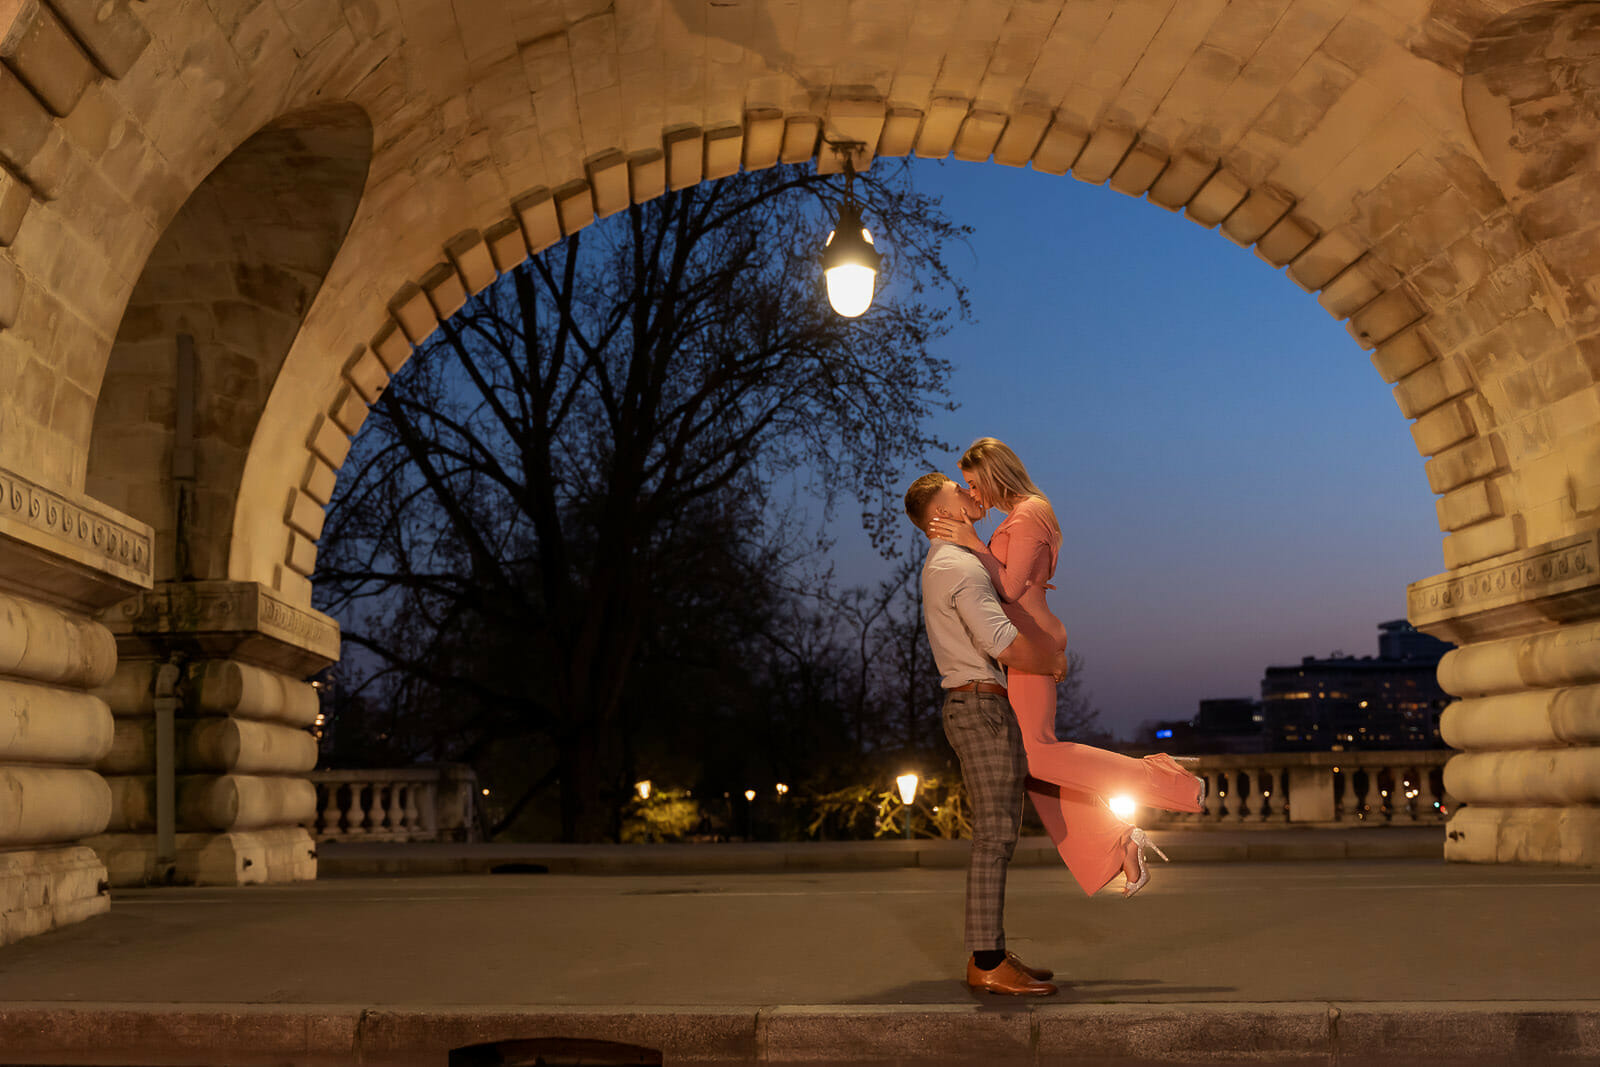 Super romantic evening Paris anniversary photos at the Bir-Hakeim Bridge